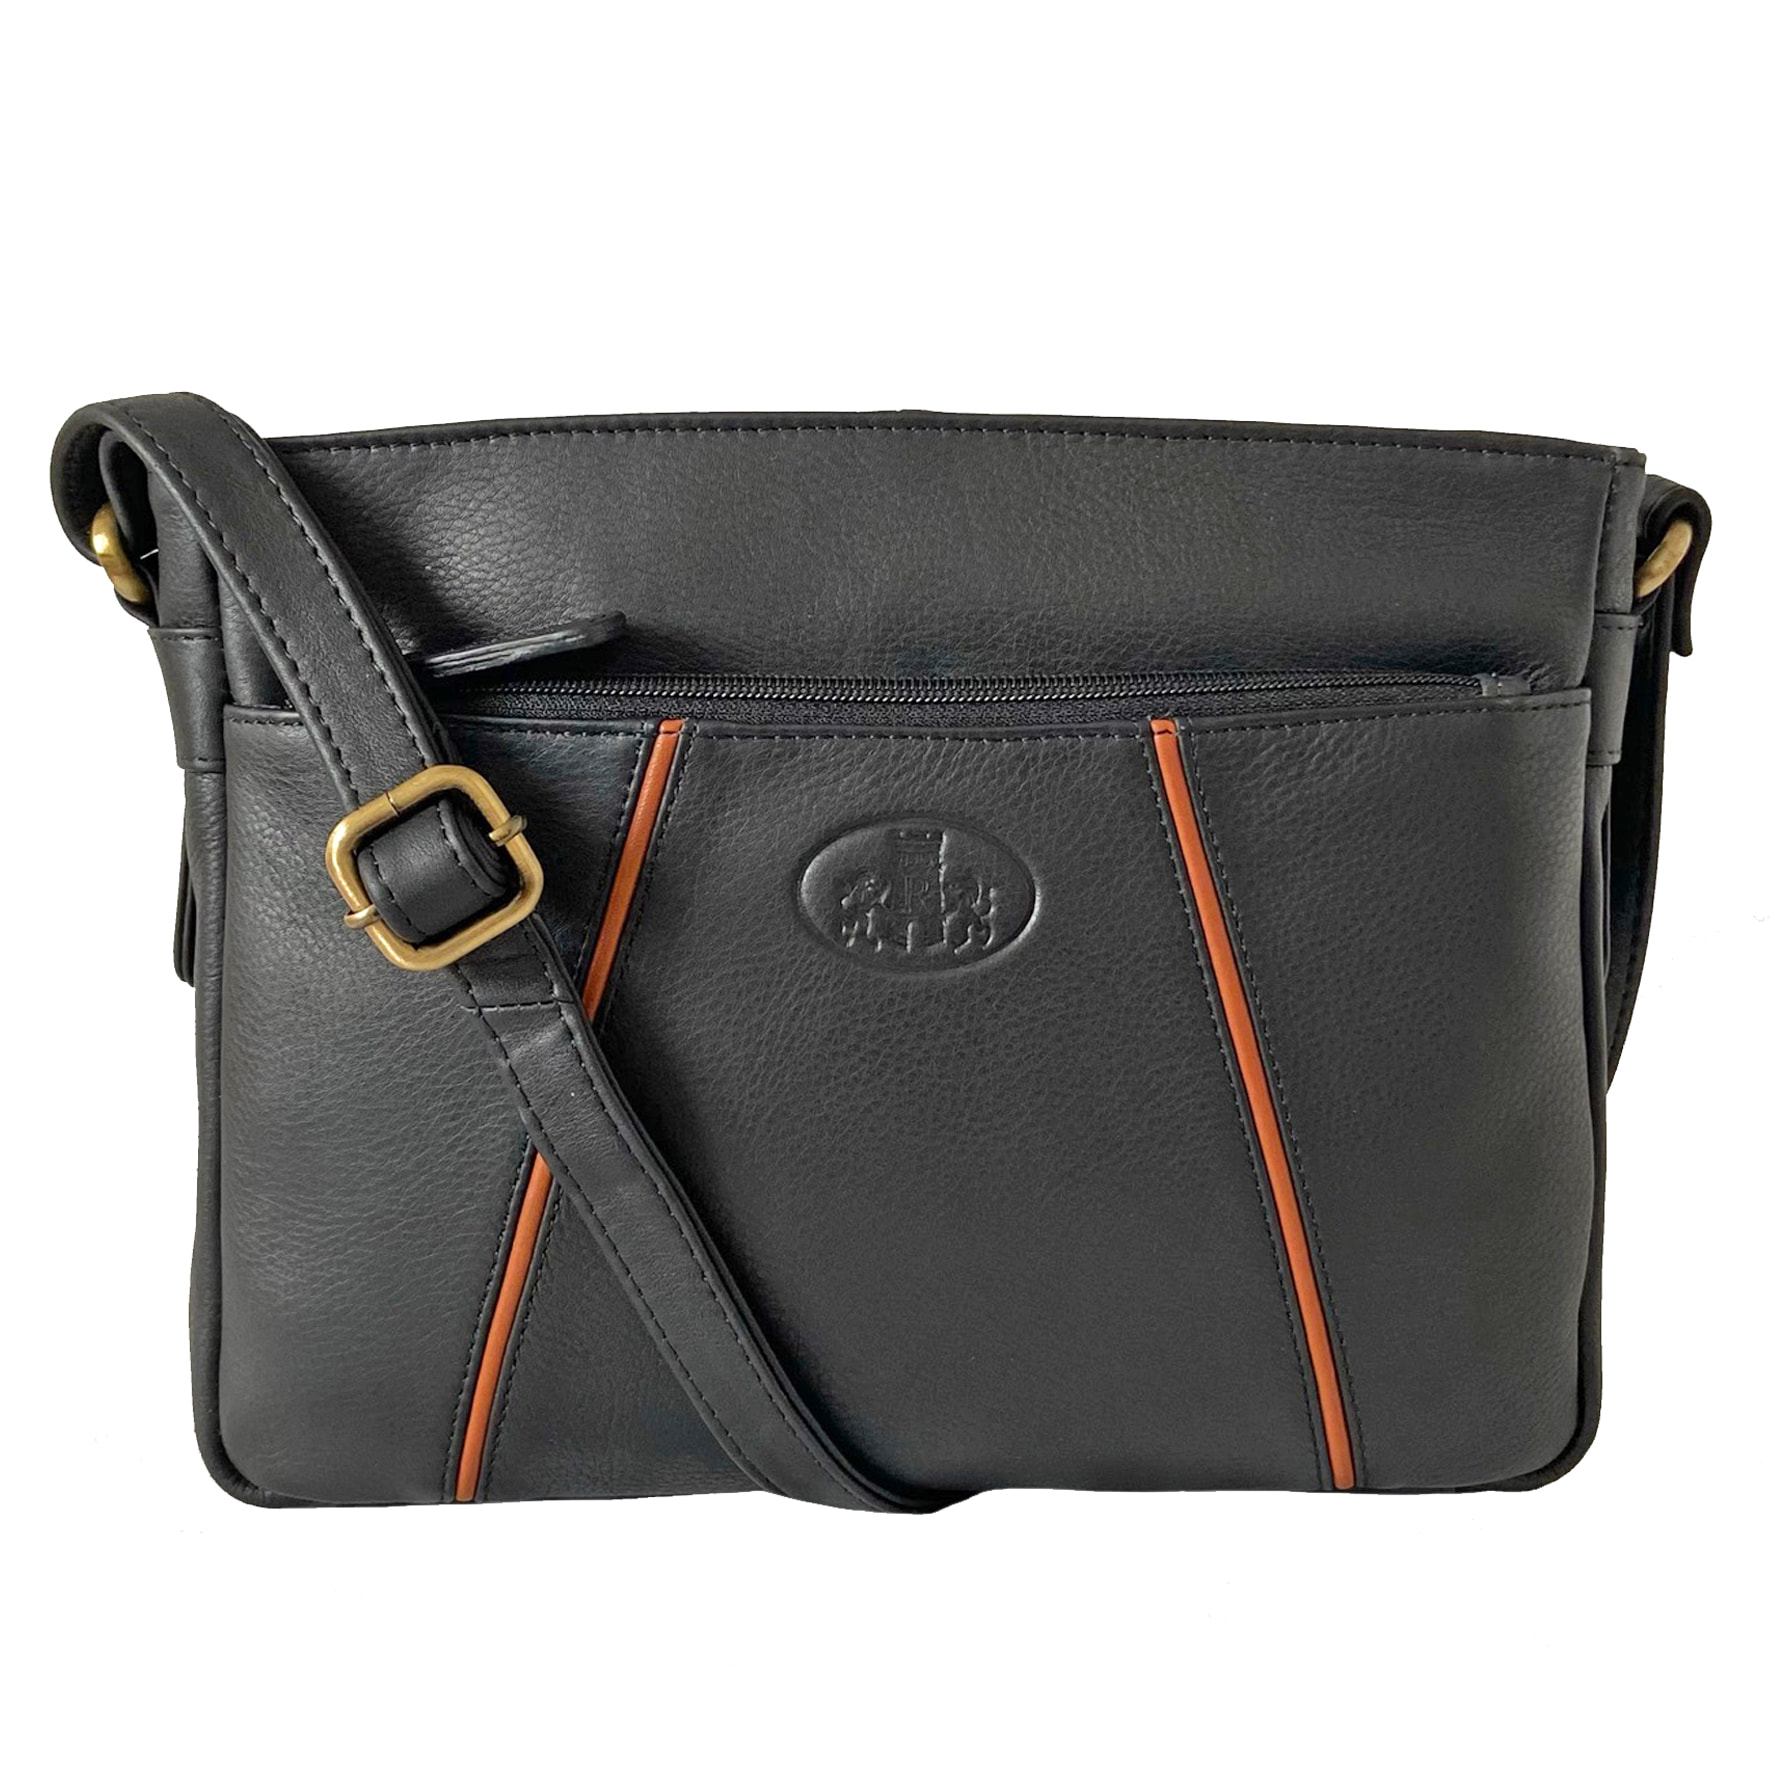 Rowallan Black Leather Handbag, Shoulder Bag